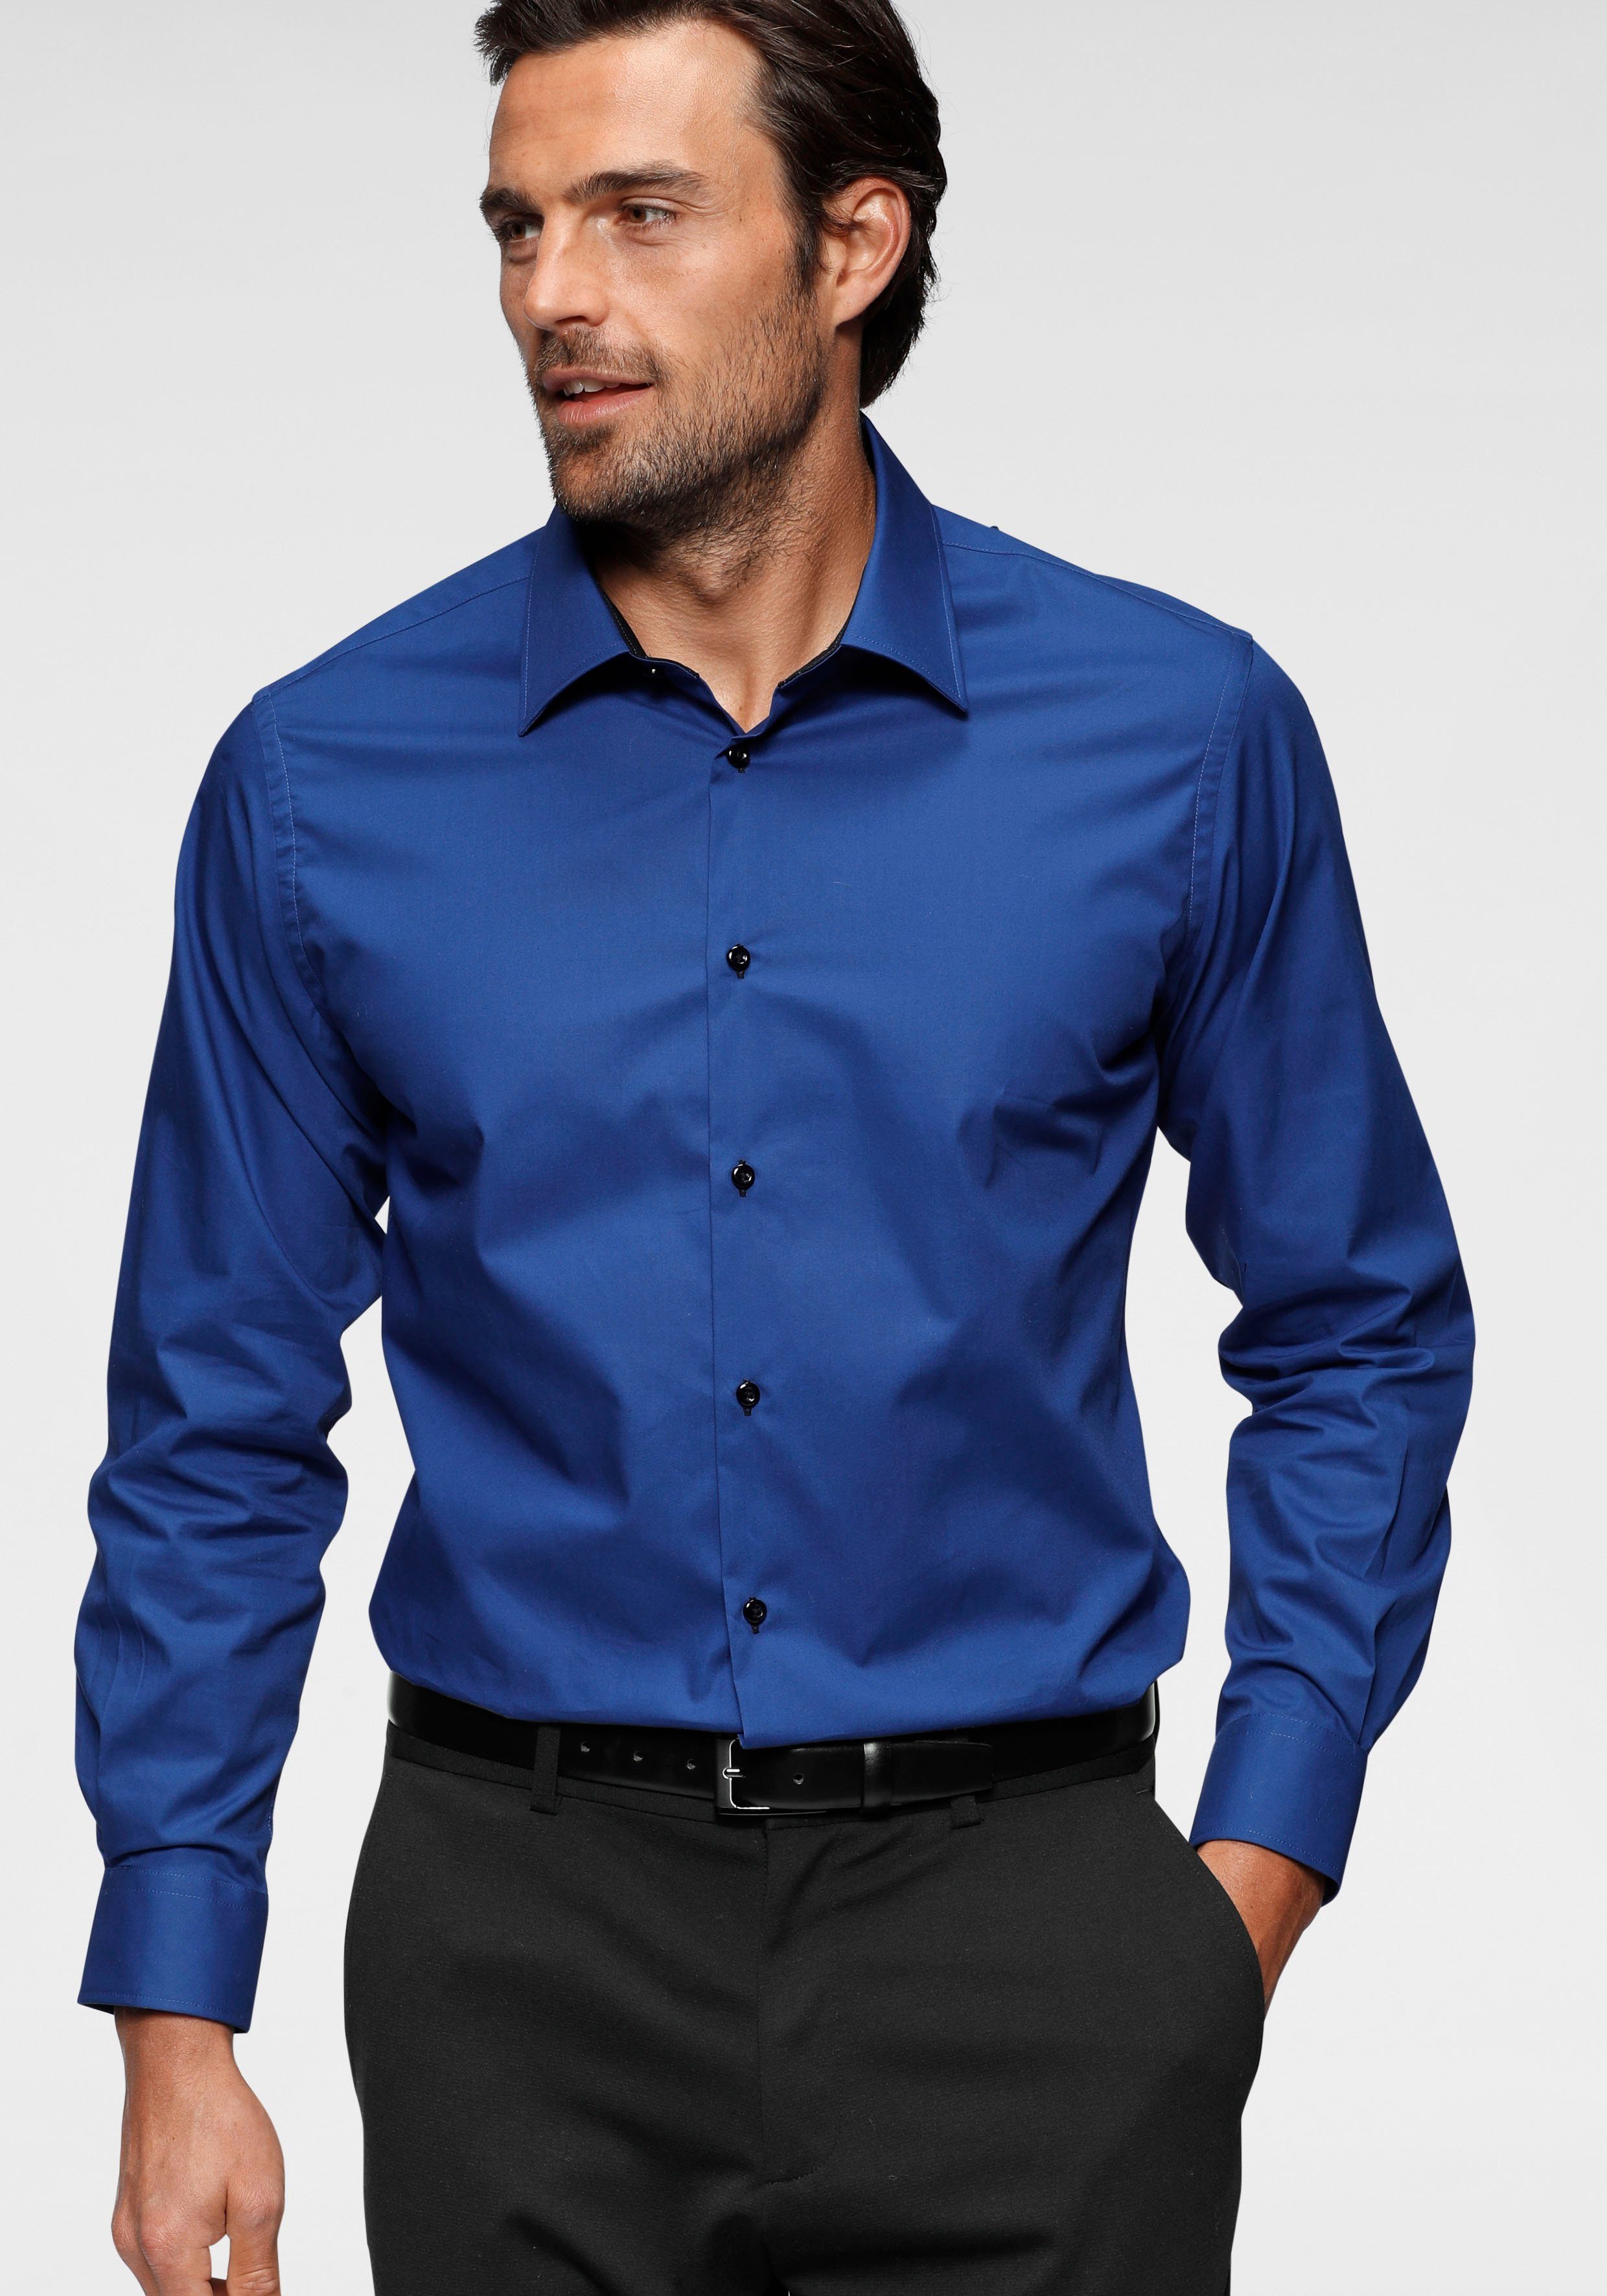 Blaues Hemd für Herren online kaufen | OTTO